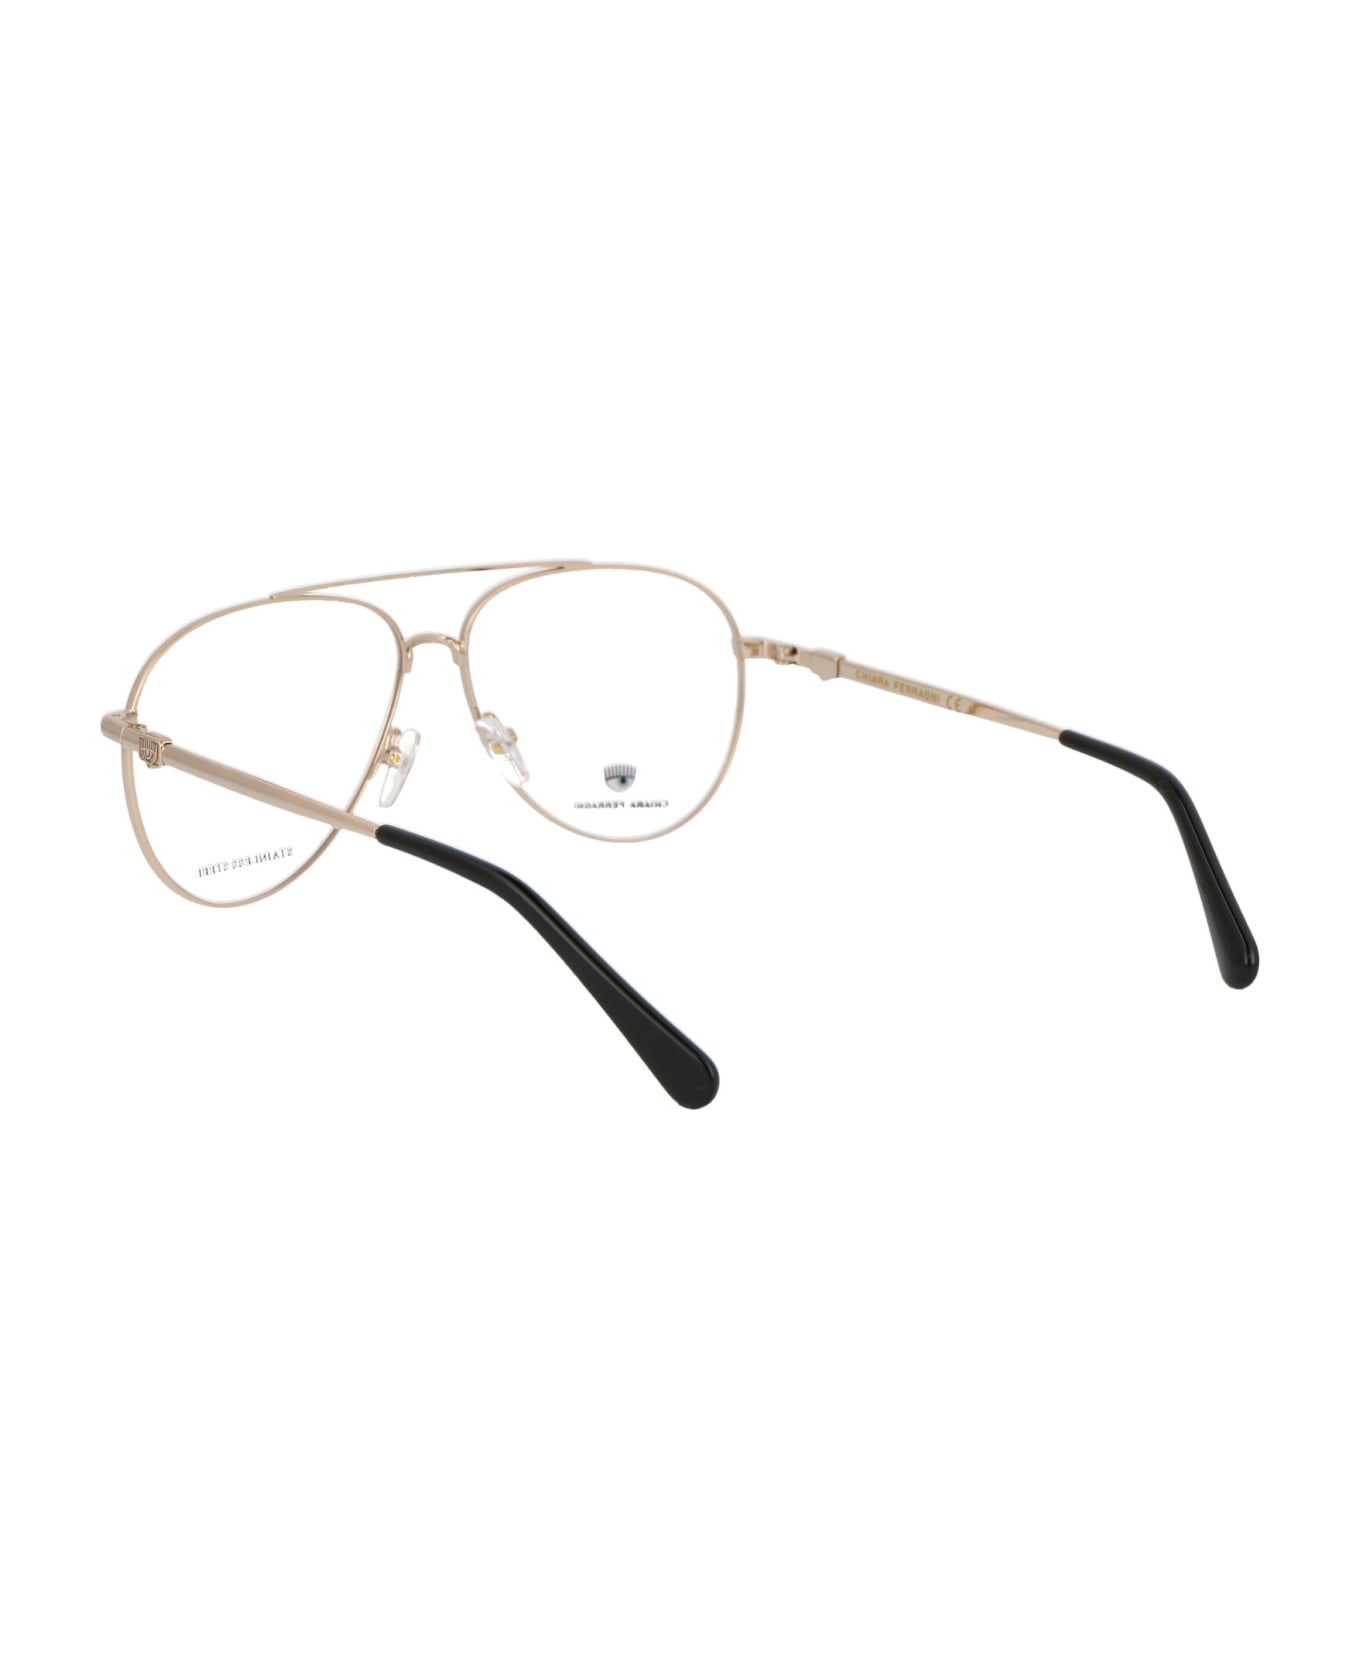 Chiara Ferragni Cf 1009 Glasses - J5G GOLD